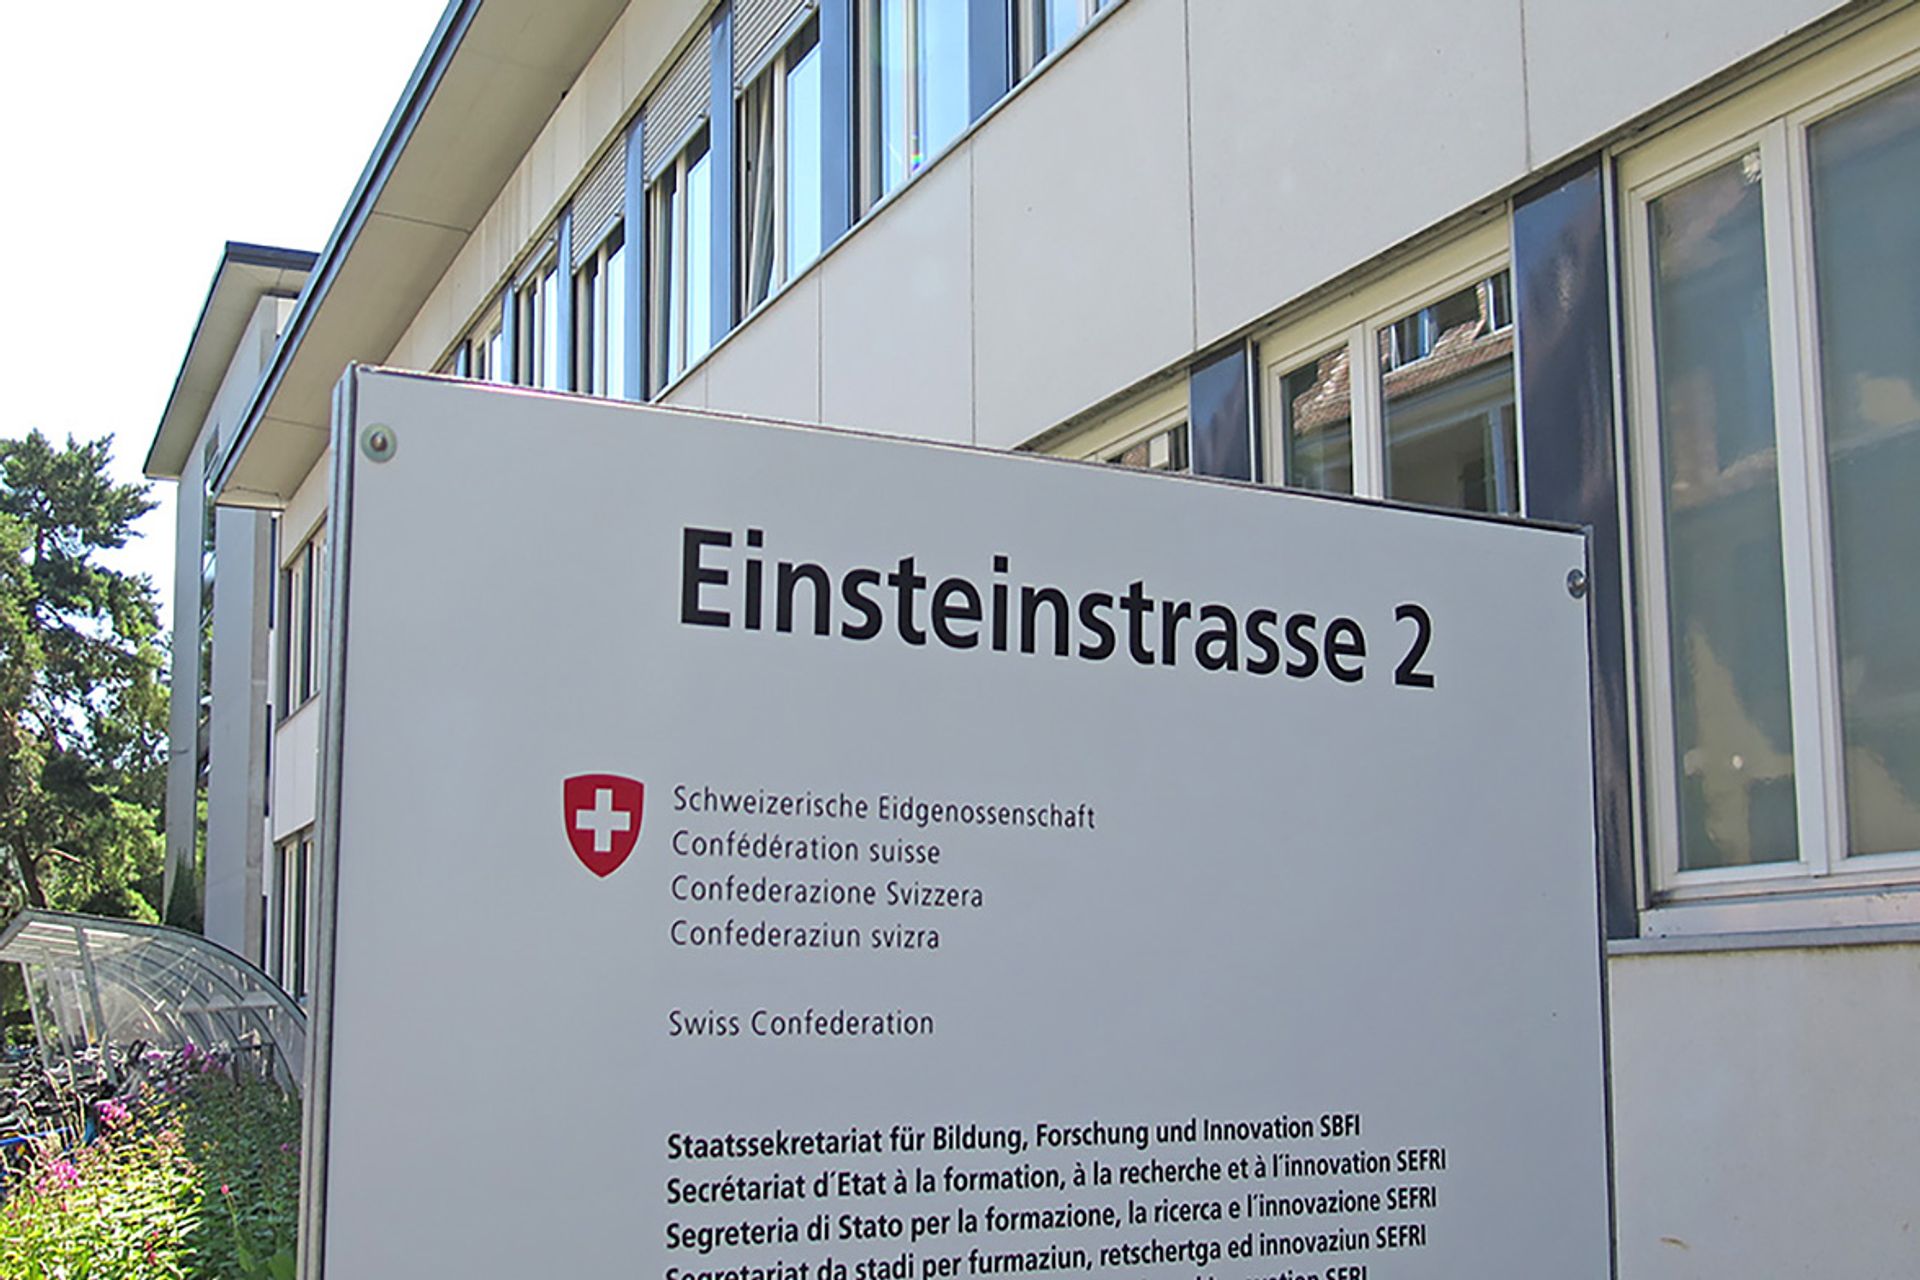 La Segreteria di Stato per la Formazione, la Ricerca e l’Innovazione (SEFRI) della Confederazione Svizzera ha sede a Berna al civico 2 di Einsteinstrasse